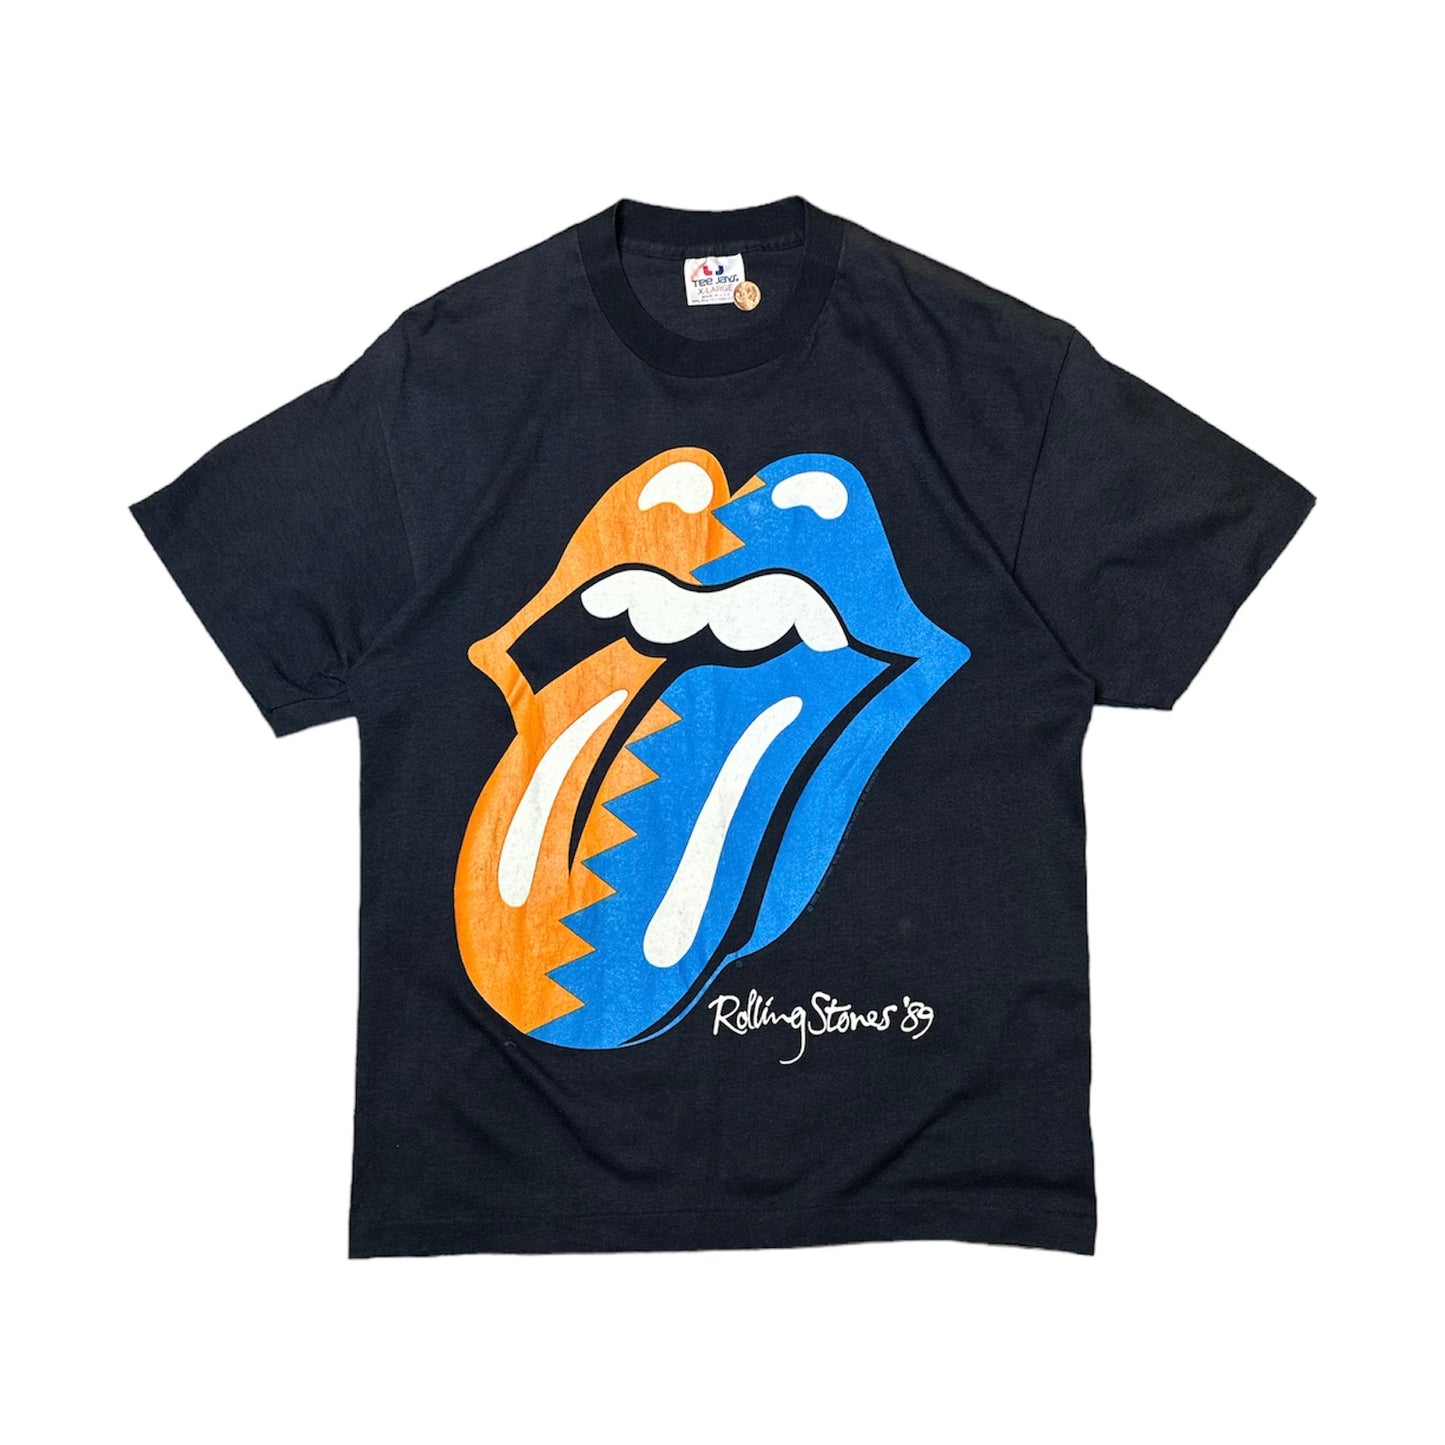 1989 Rolling Stones Tour T-Shirt